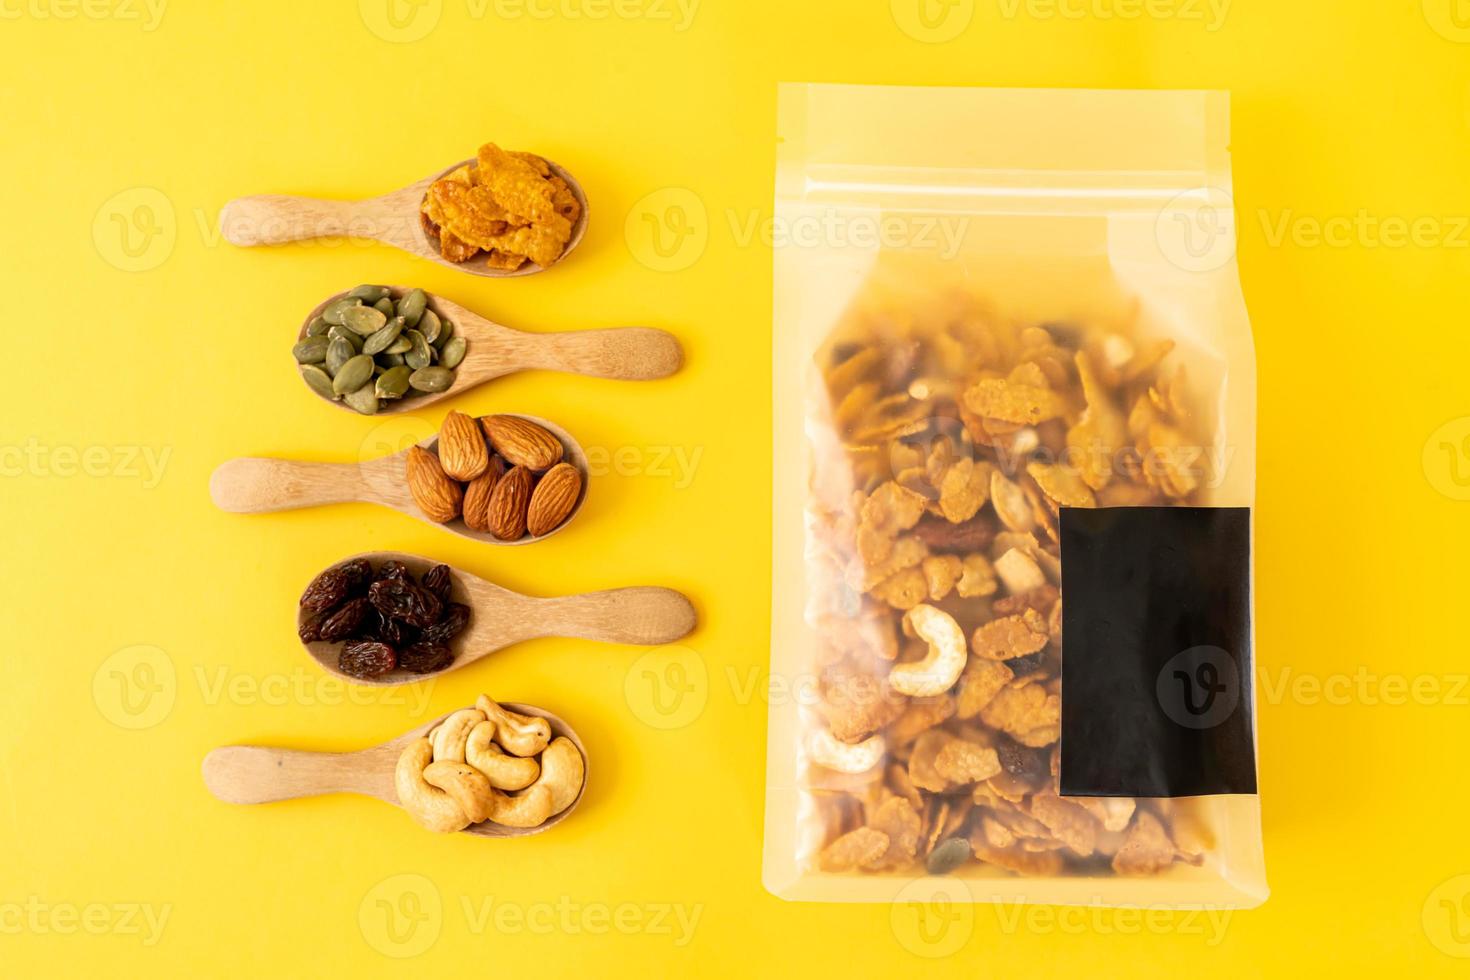 grãos flocos de milho de castanha de caju, amêndoa, sementes de abóbora e sementes de girassol - alimentos saudáveis com vários grãos foto